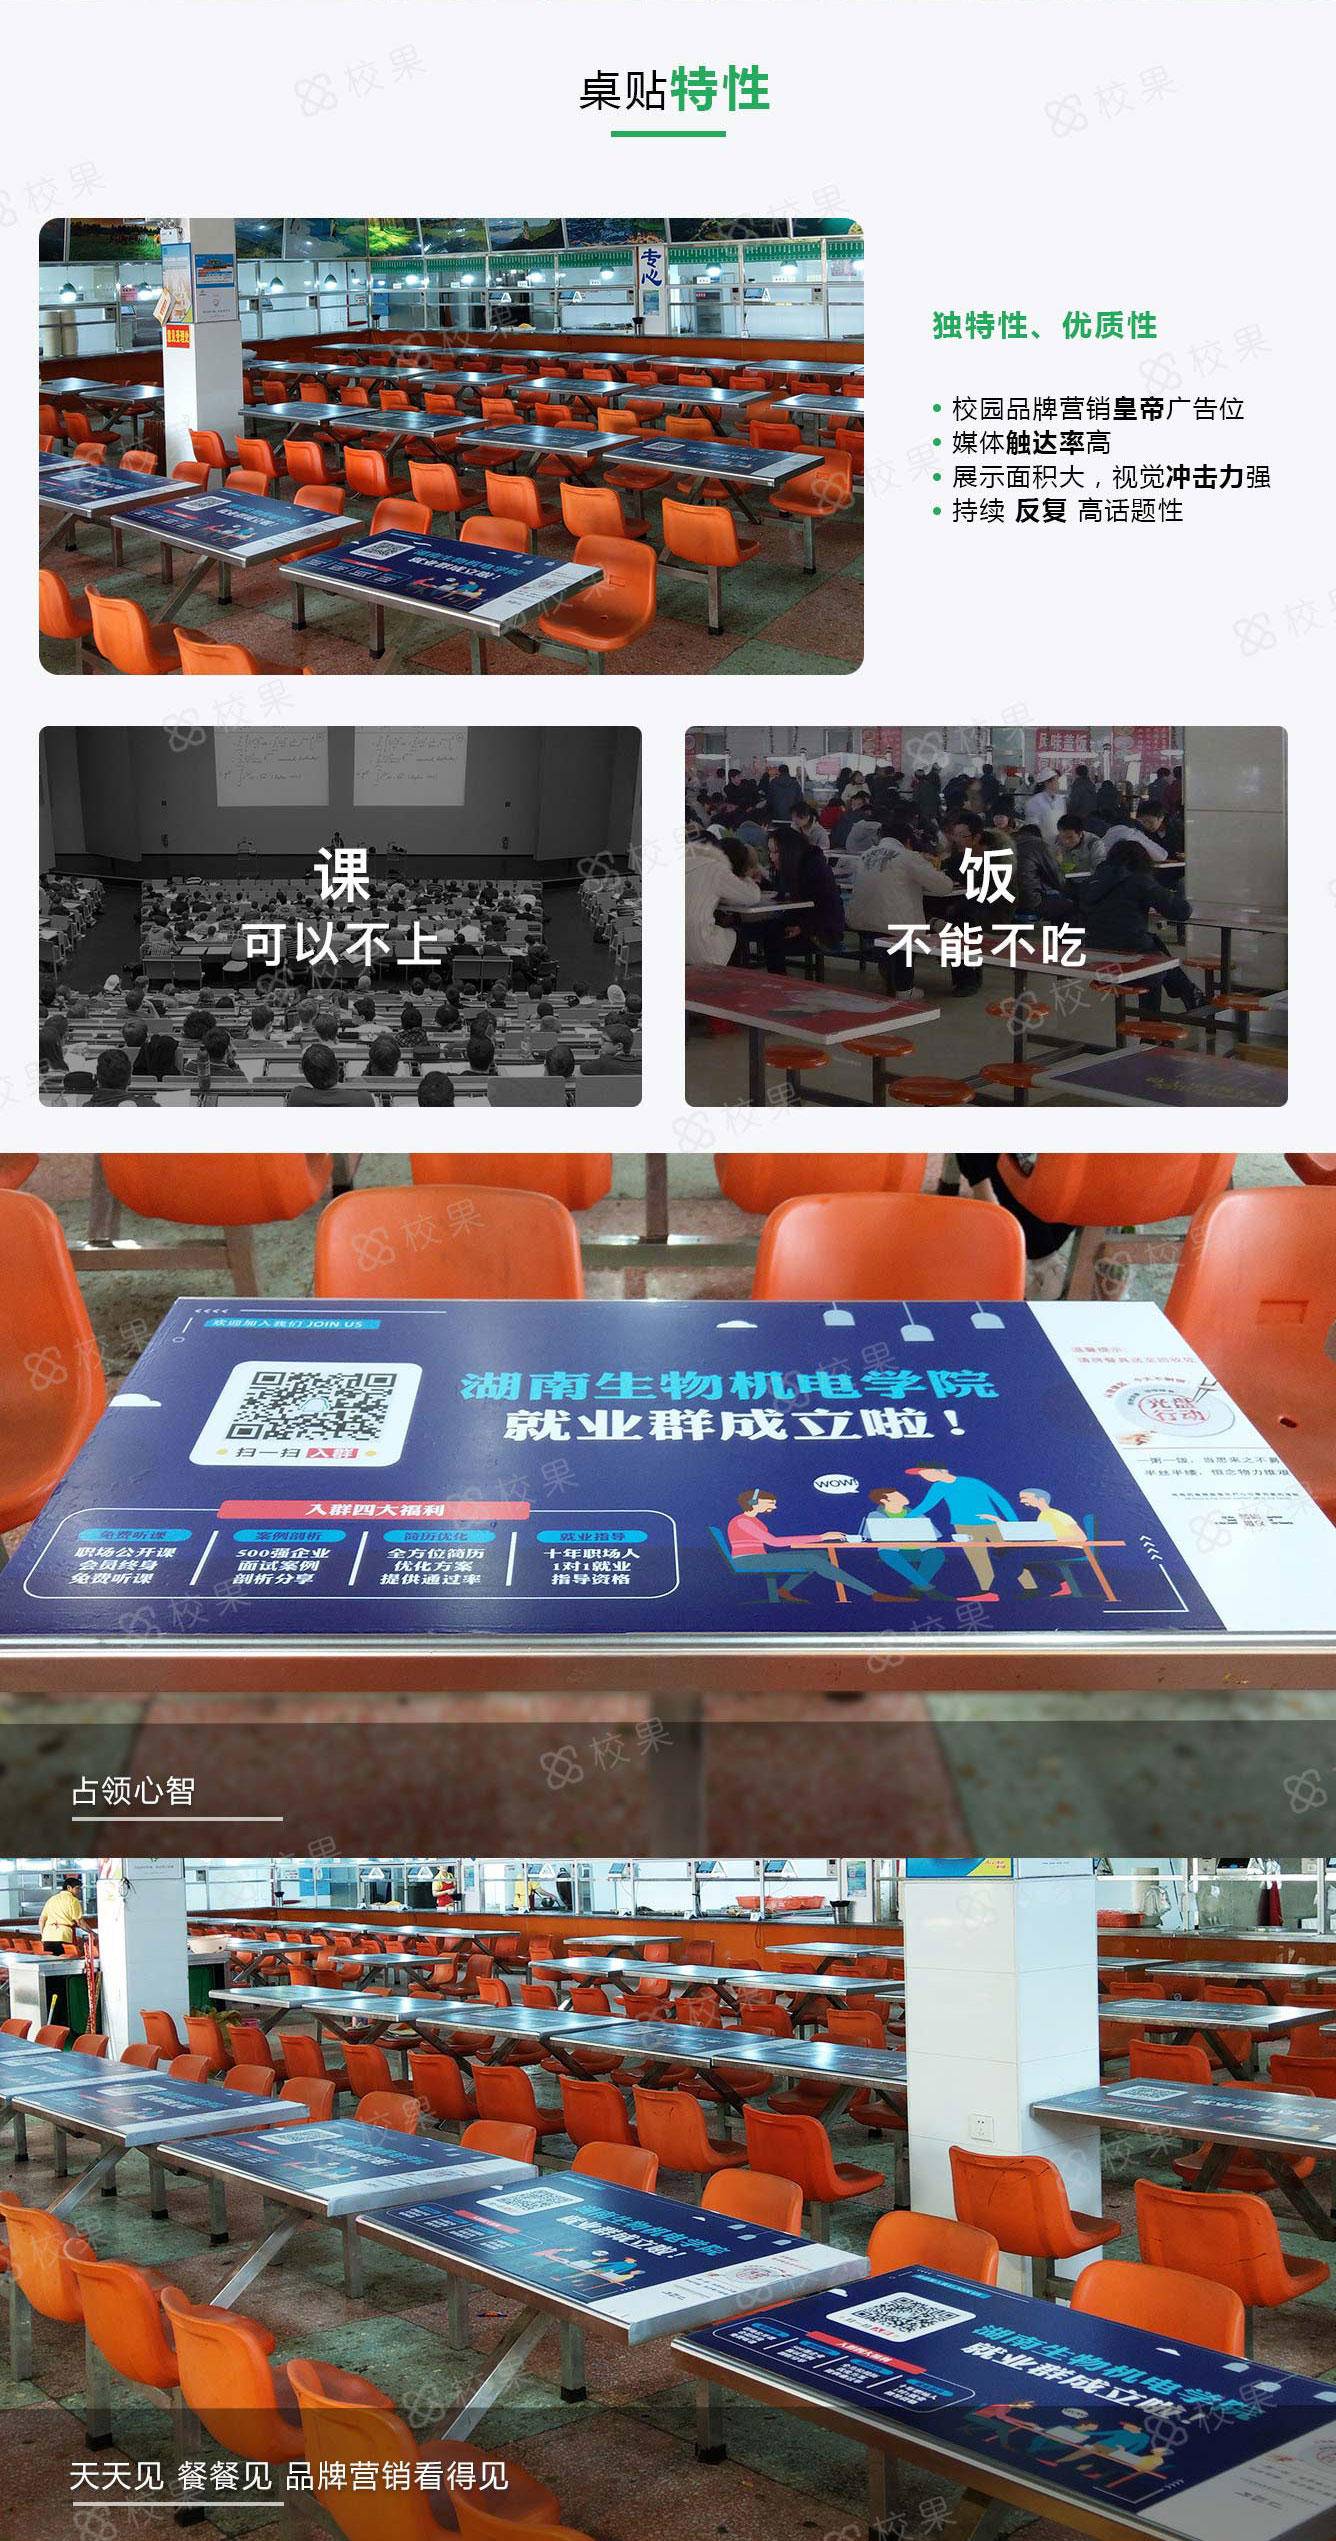 郑州高校桌贴广告特征